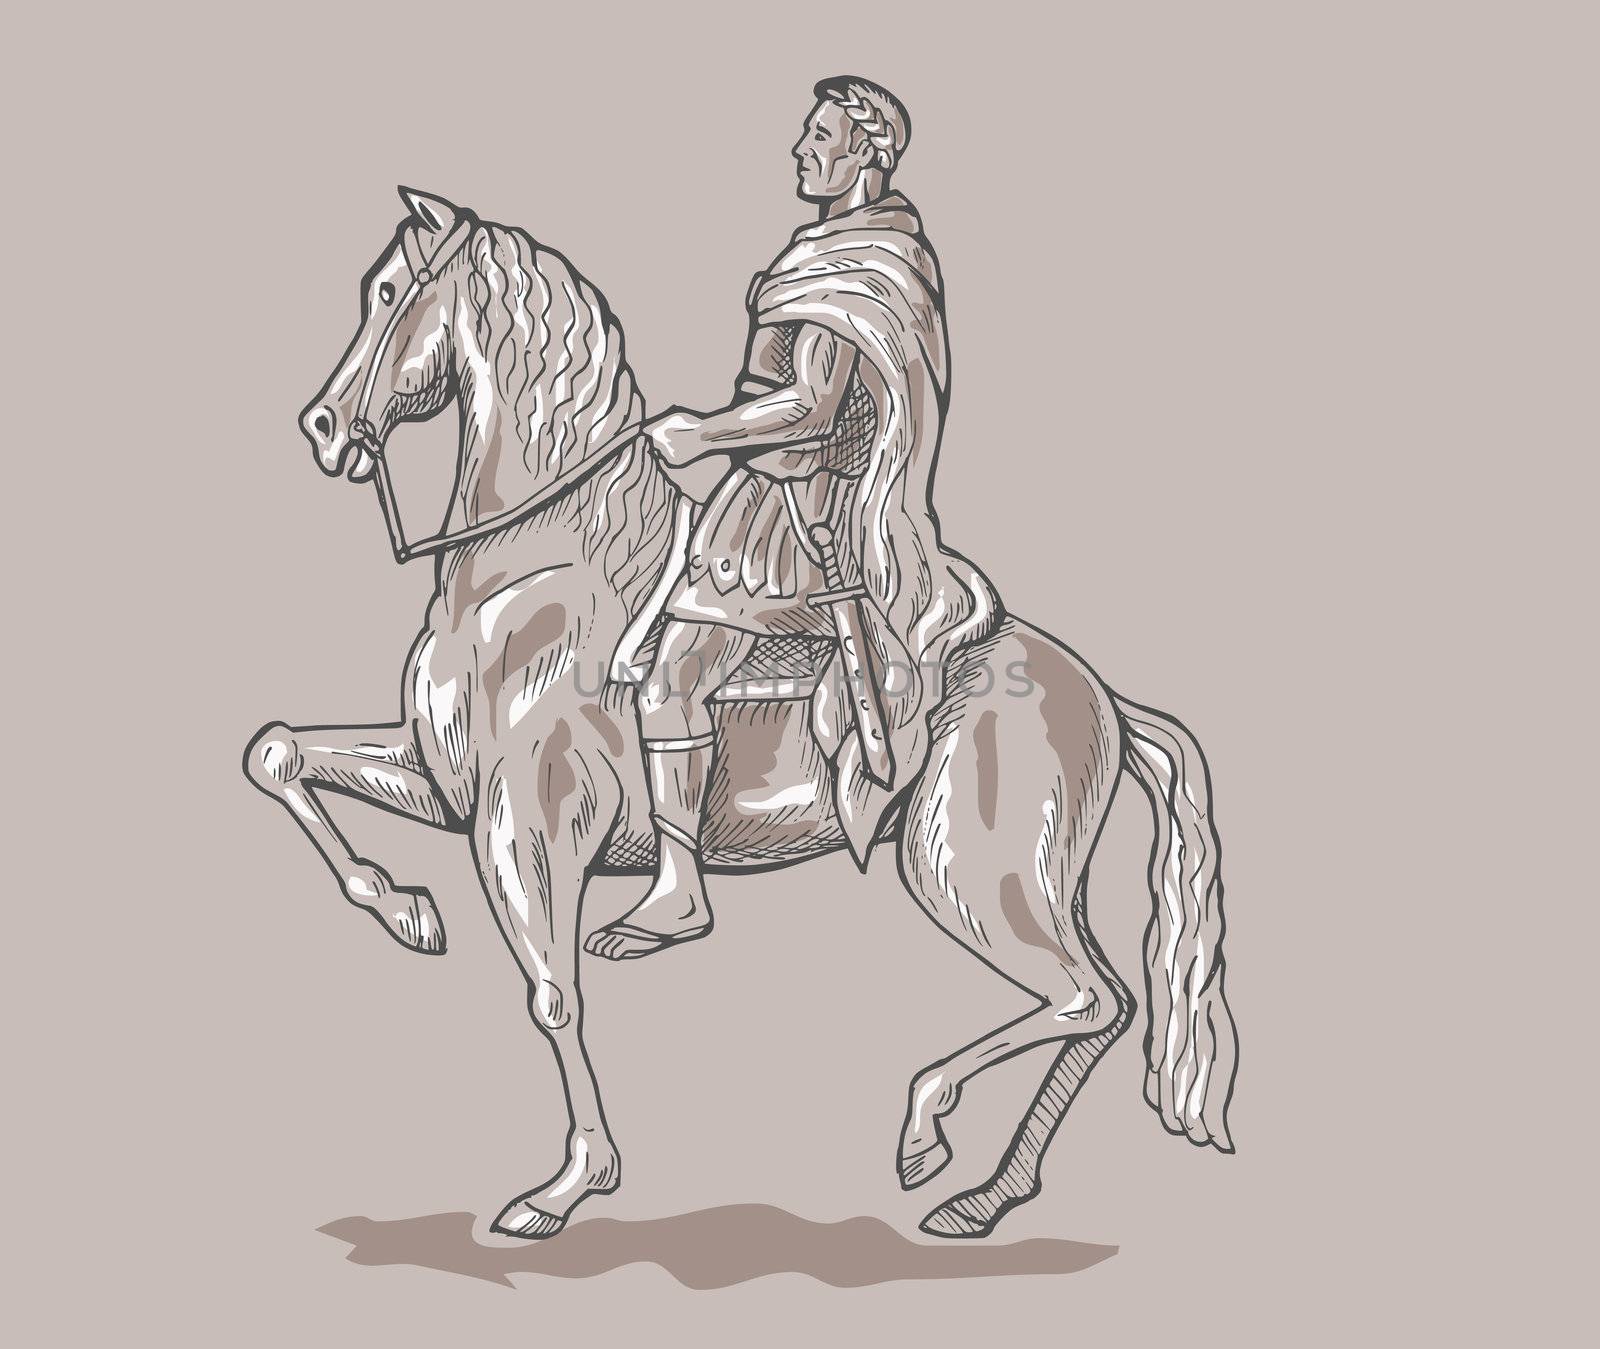 Roman emperor soldier riding horse by patrimonio